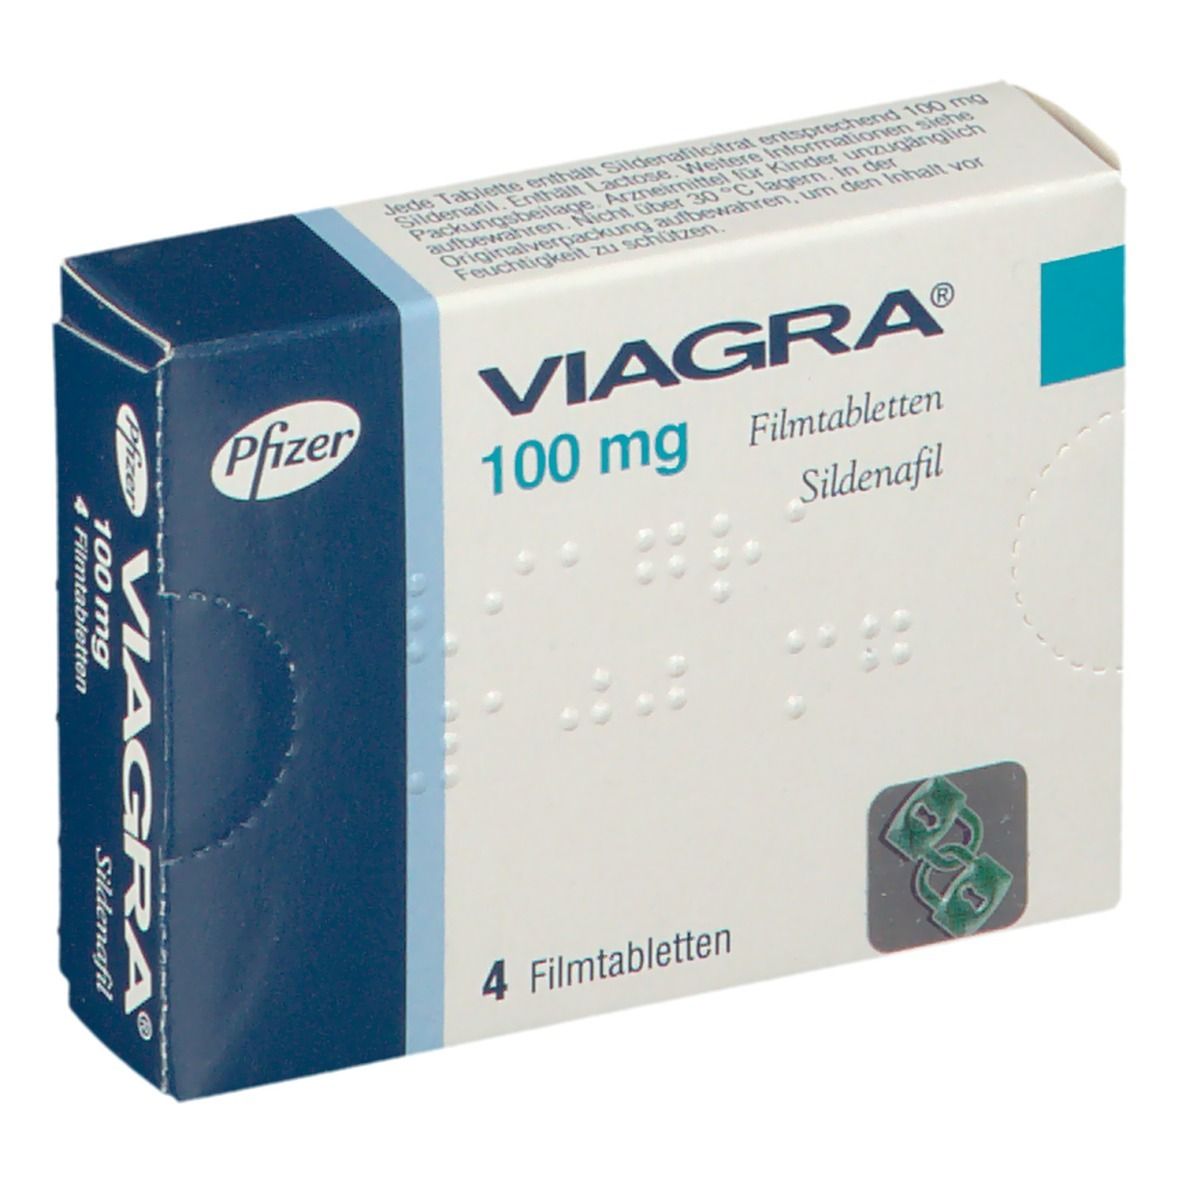 generico viagra: Eine unglaublich einfache Methode, die für alle funktioniert